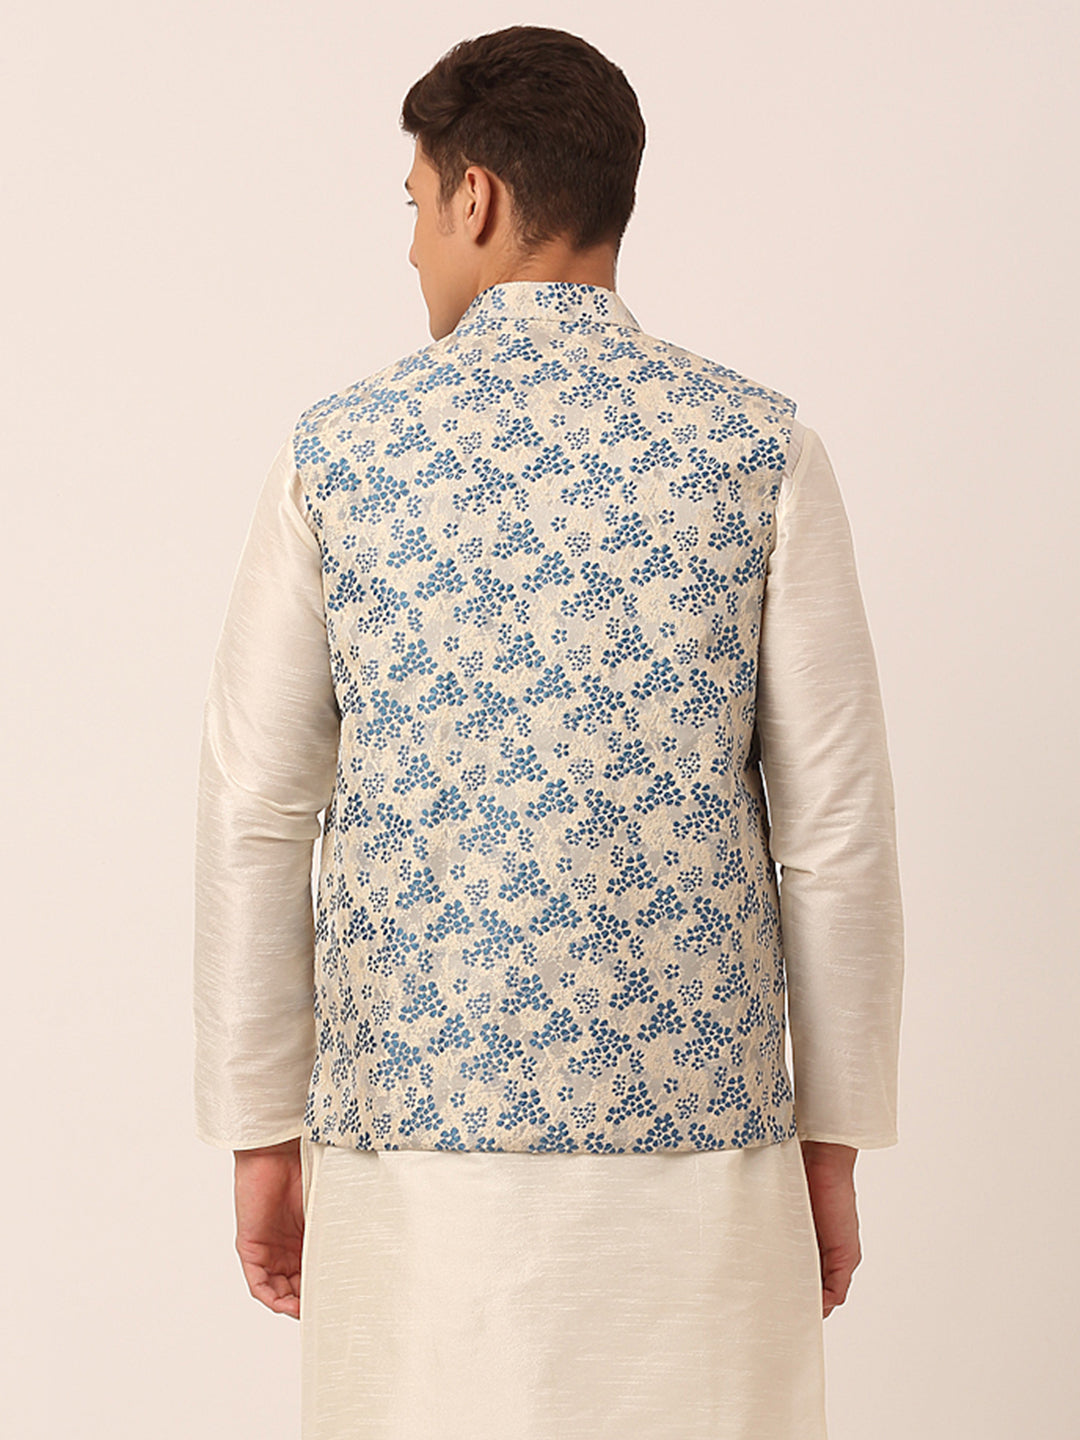 Men's Blue Floral Design Nehru Jacket.